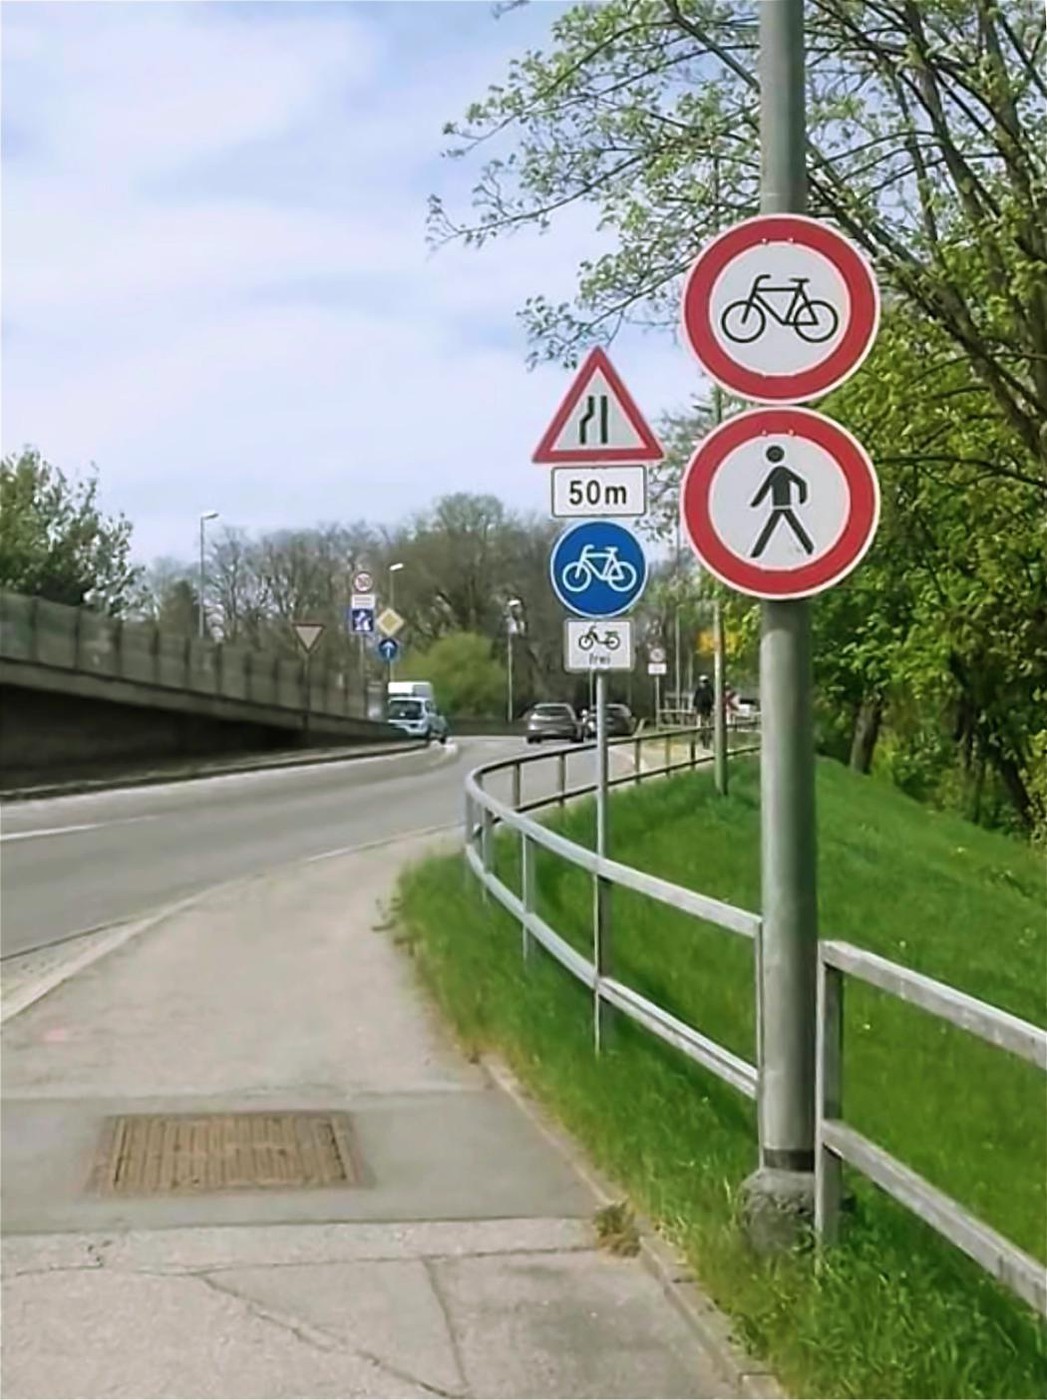 Radfahrverbot auf benutzungspflichtigem Radweg!